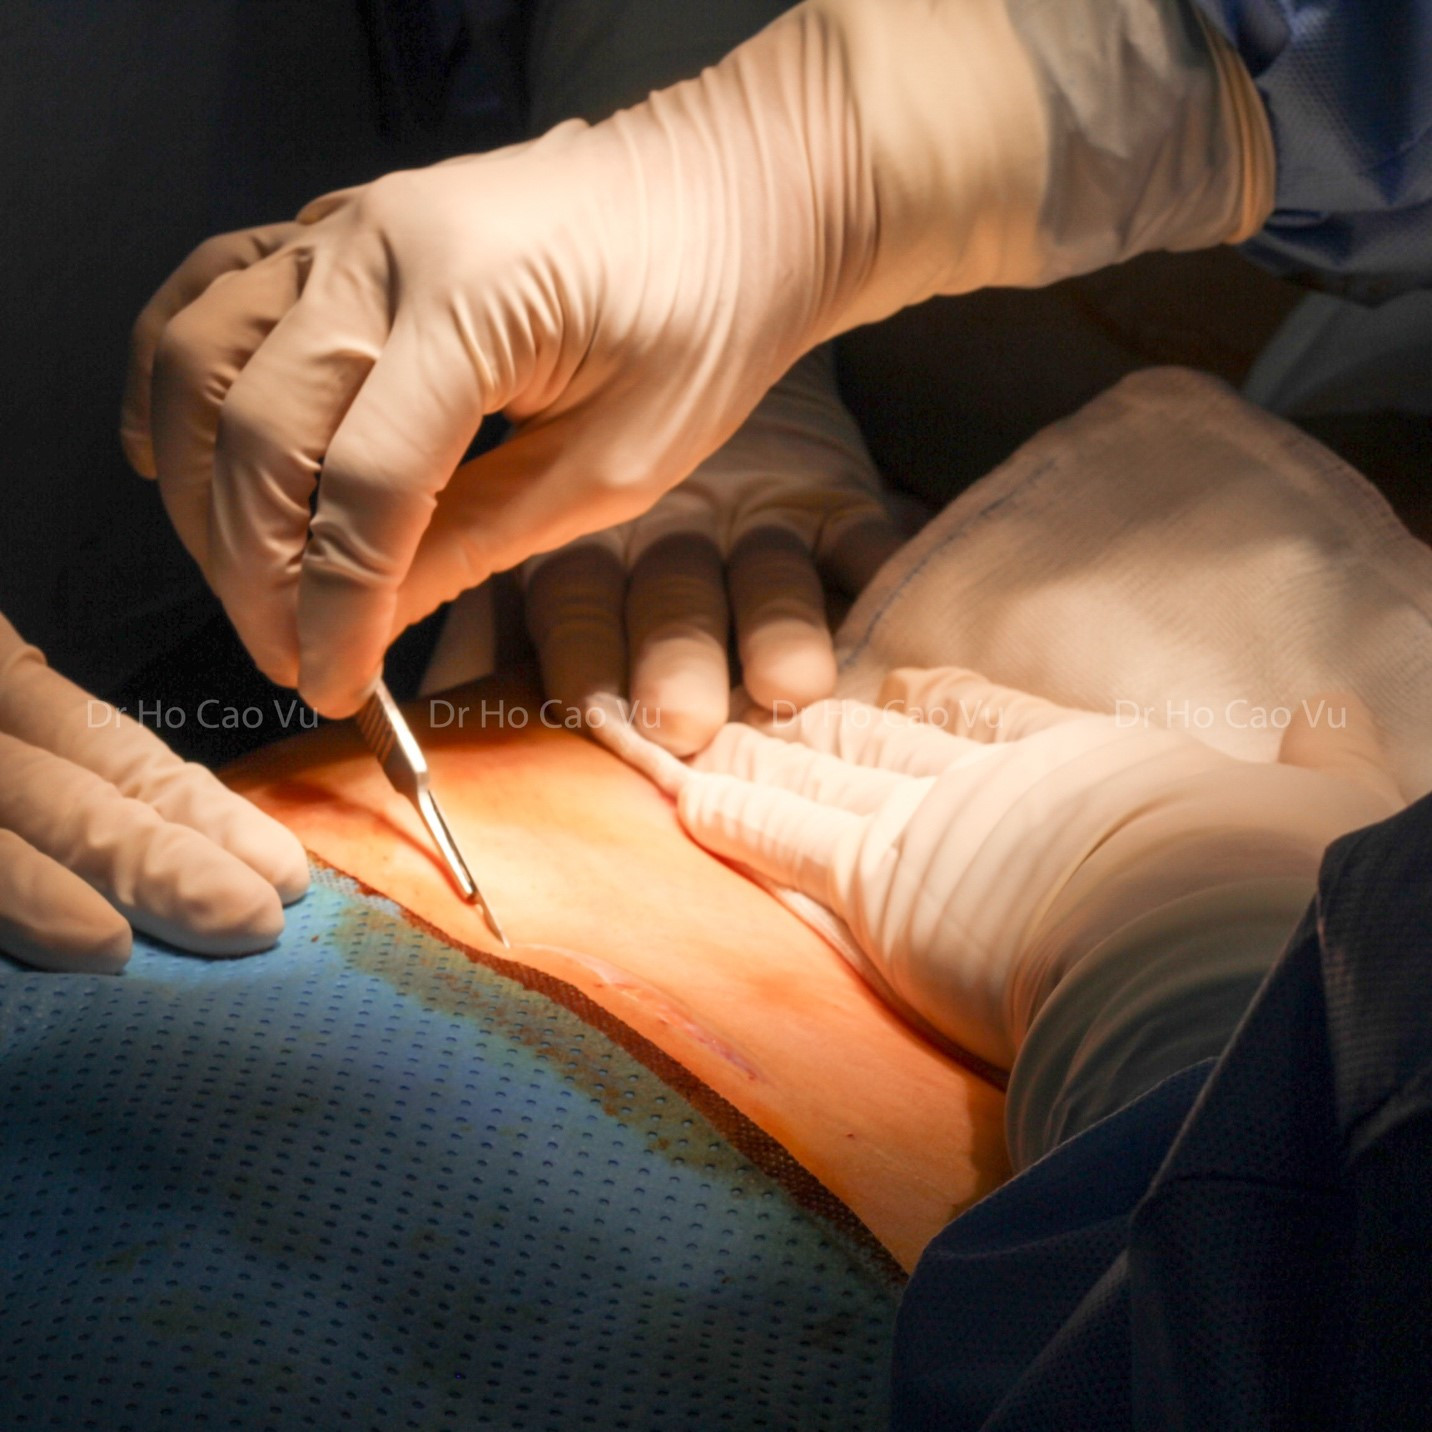 Bác sĩ chia sẻ lưu ý khi cùng lúc phẫu thuật tạo hình thành bụng, nâng ngực